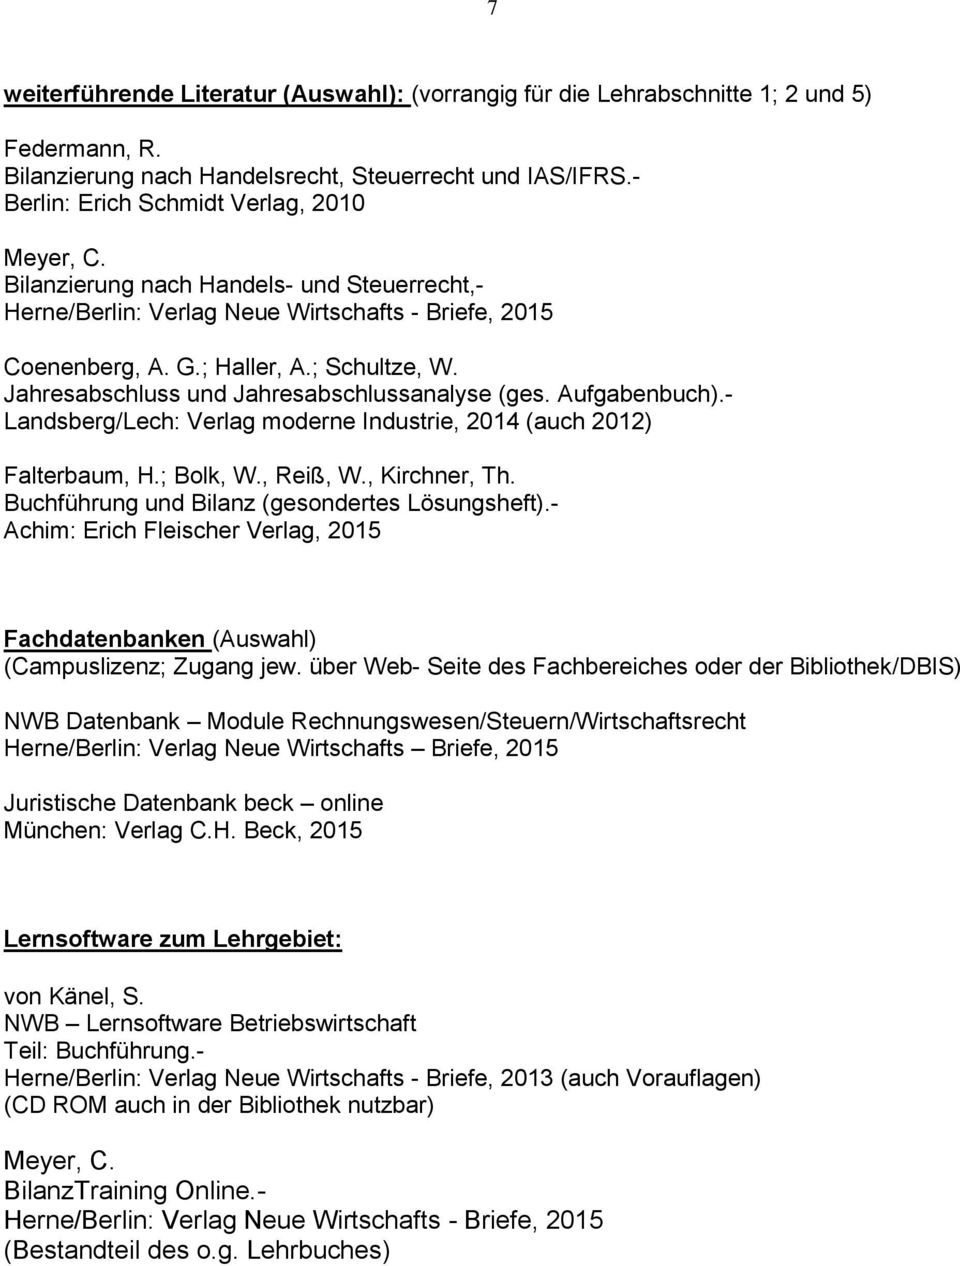 Jahresabschluss und Jahresabschlussanalyse (ges. Aufgabenbuch).- Landsberg/Lech: Verlag moderne Industrie, 2014 (auch 2012) Falterbaum, H.; Bolk, W., Reiß, W., Kirchner, Th.